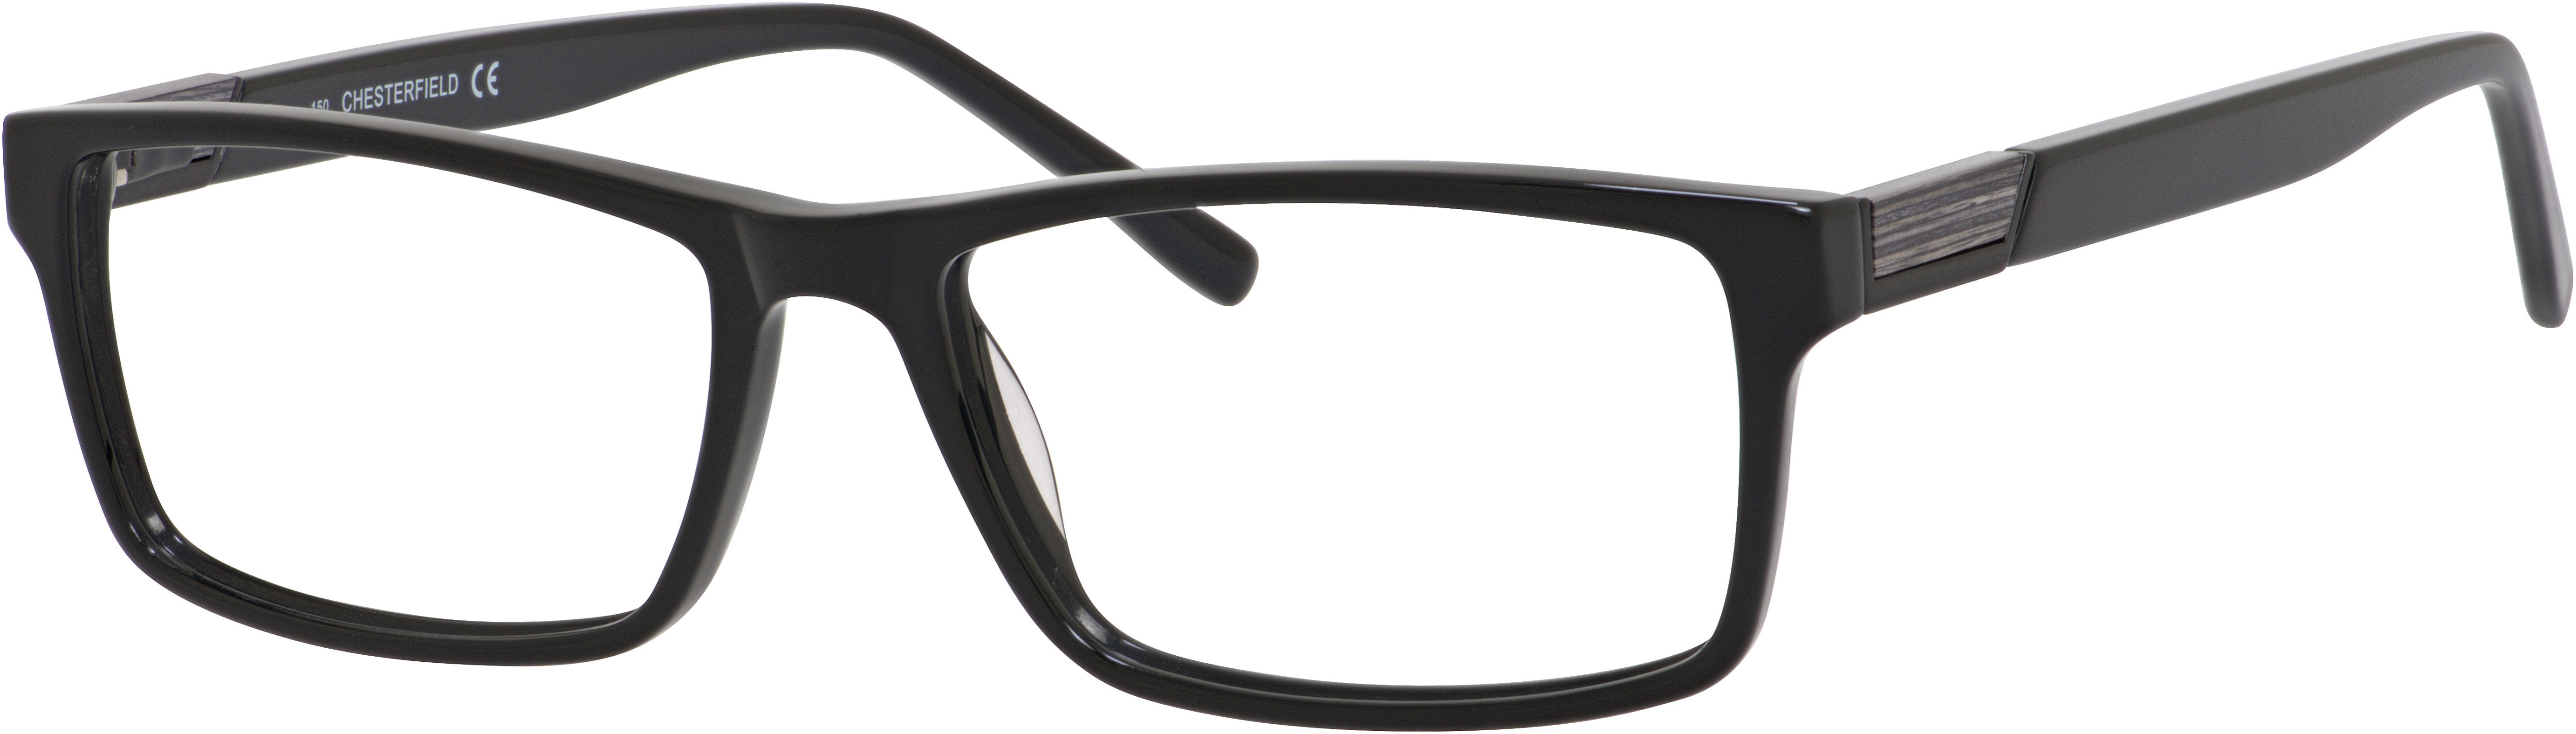  Chesterfield 44 XL Rectangular Eyeglasses 0807-0807  Black (00 Demo Lens)